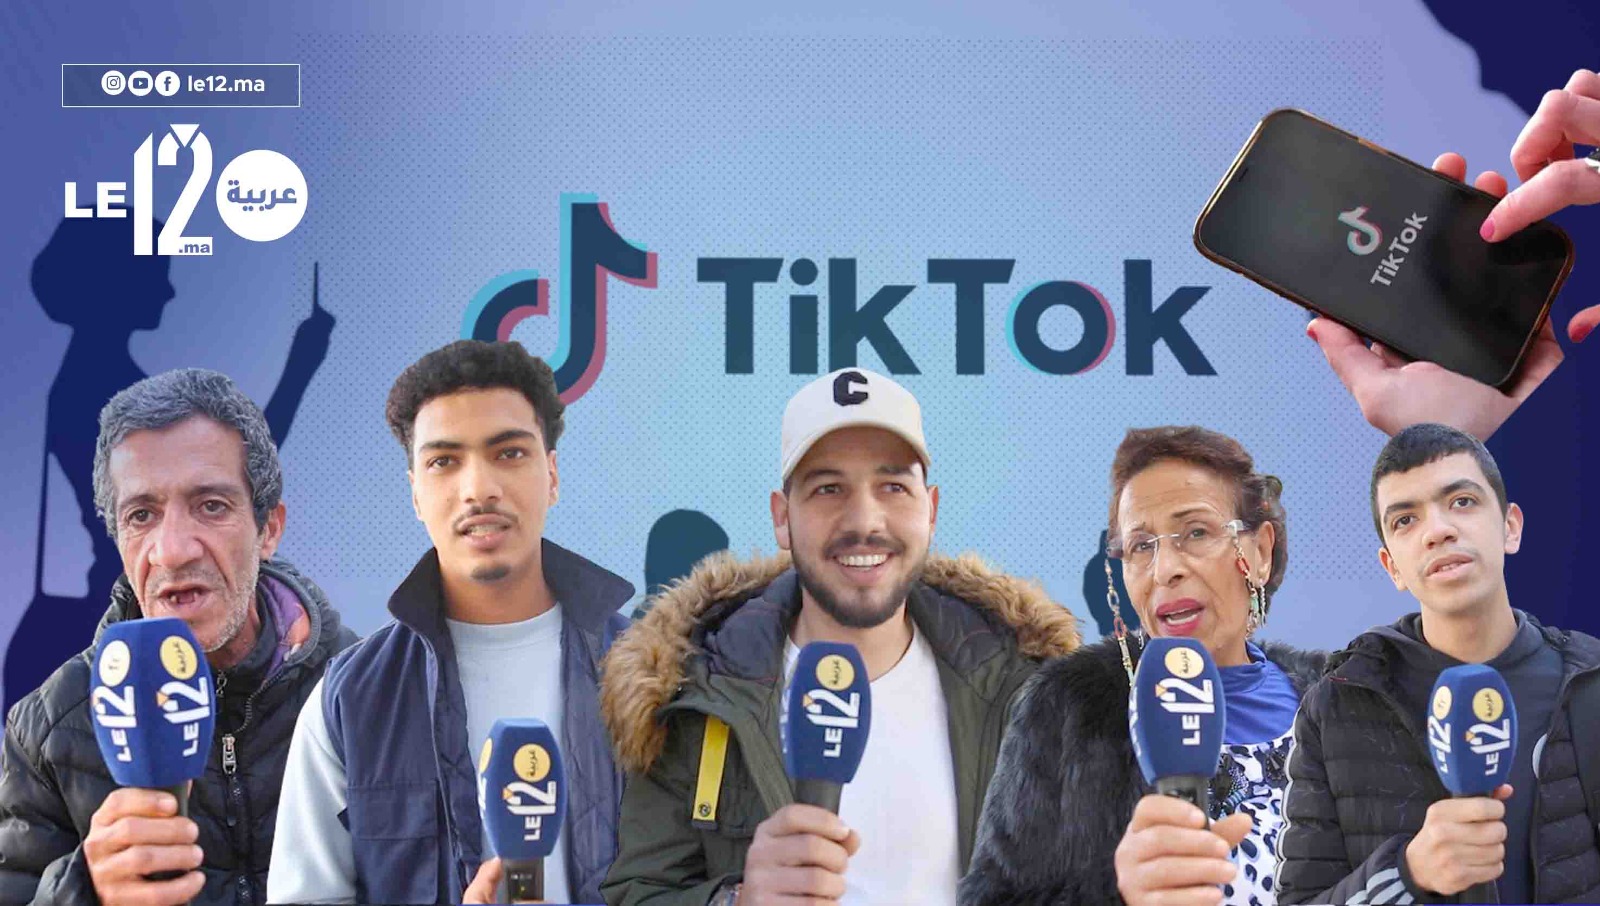 بعد ريبورتاج le12. مطلب حظر تطبيق تيك توك في المغرب وصل إلى البرلمان (+فيديو)